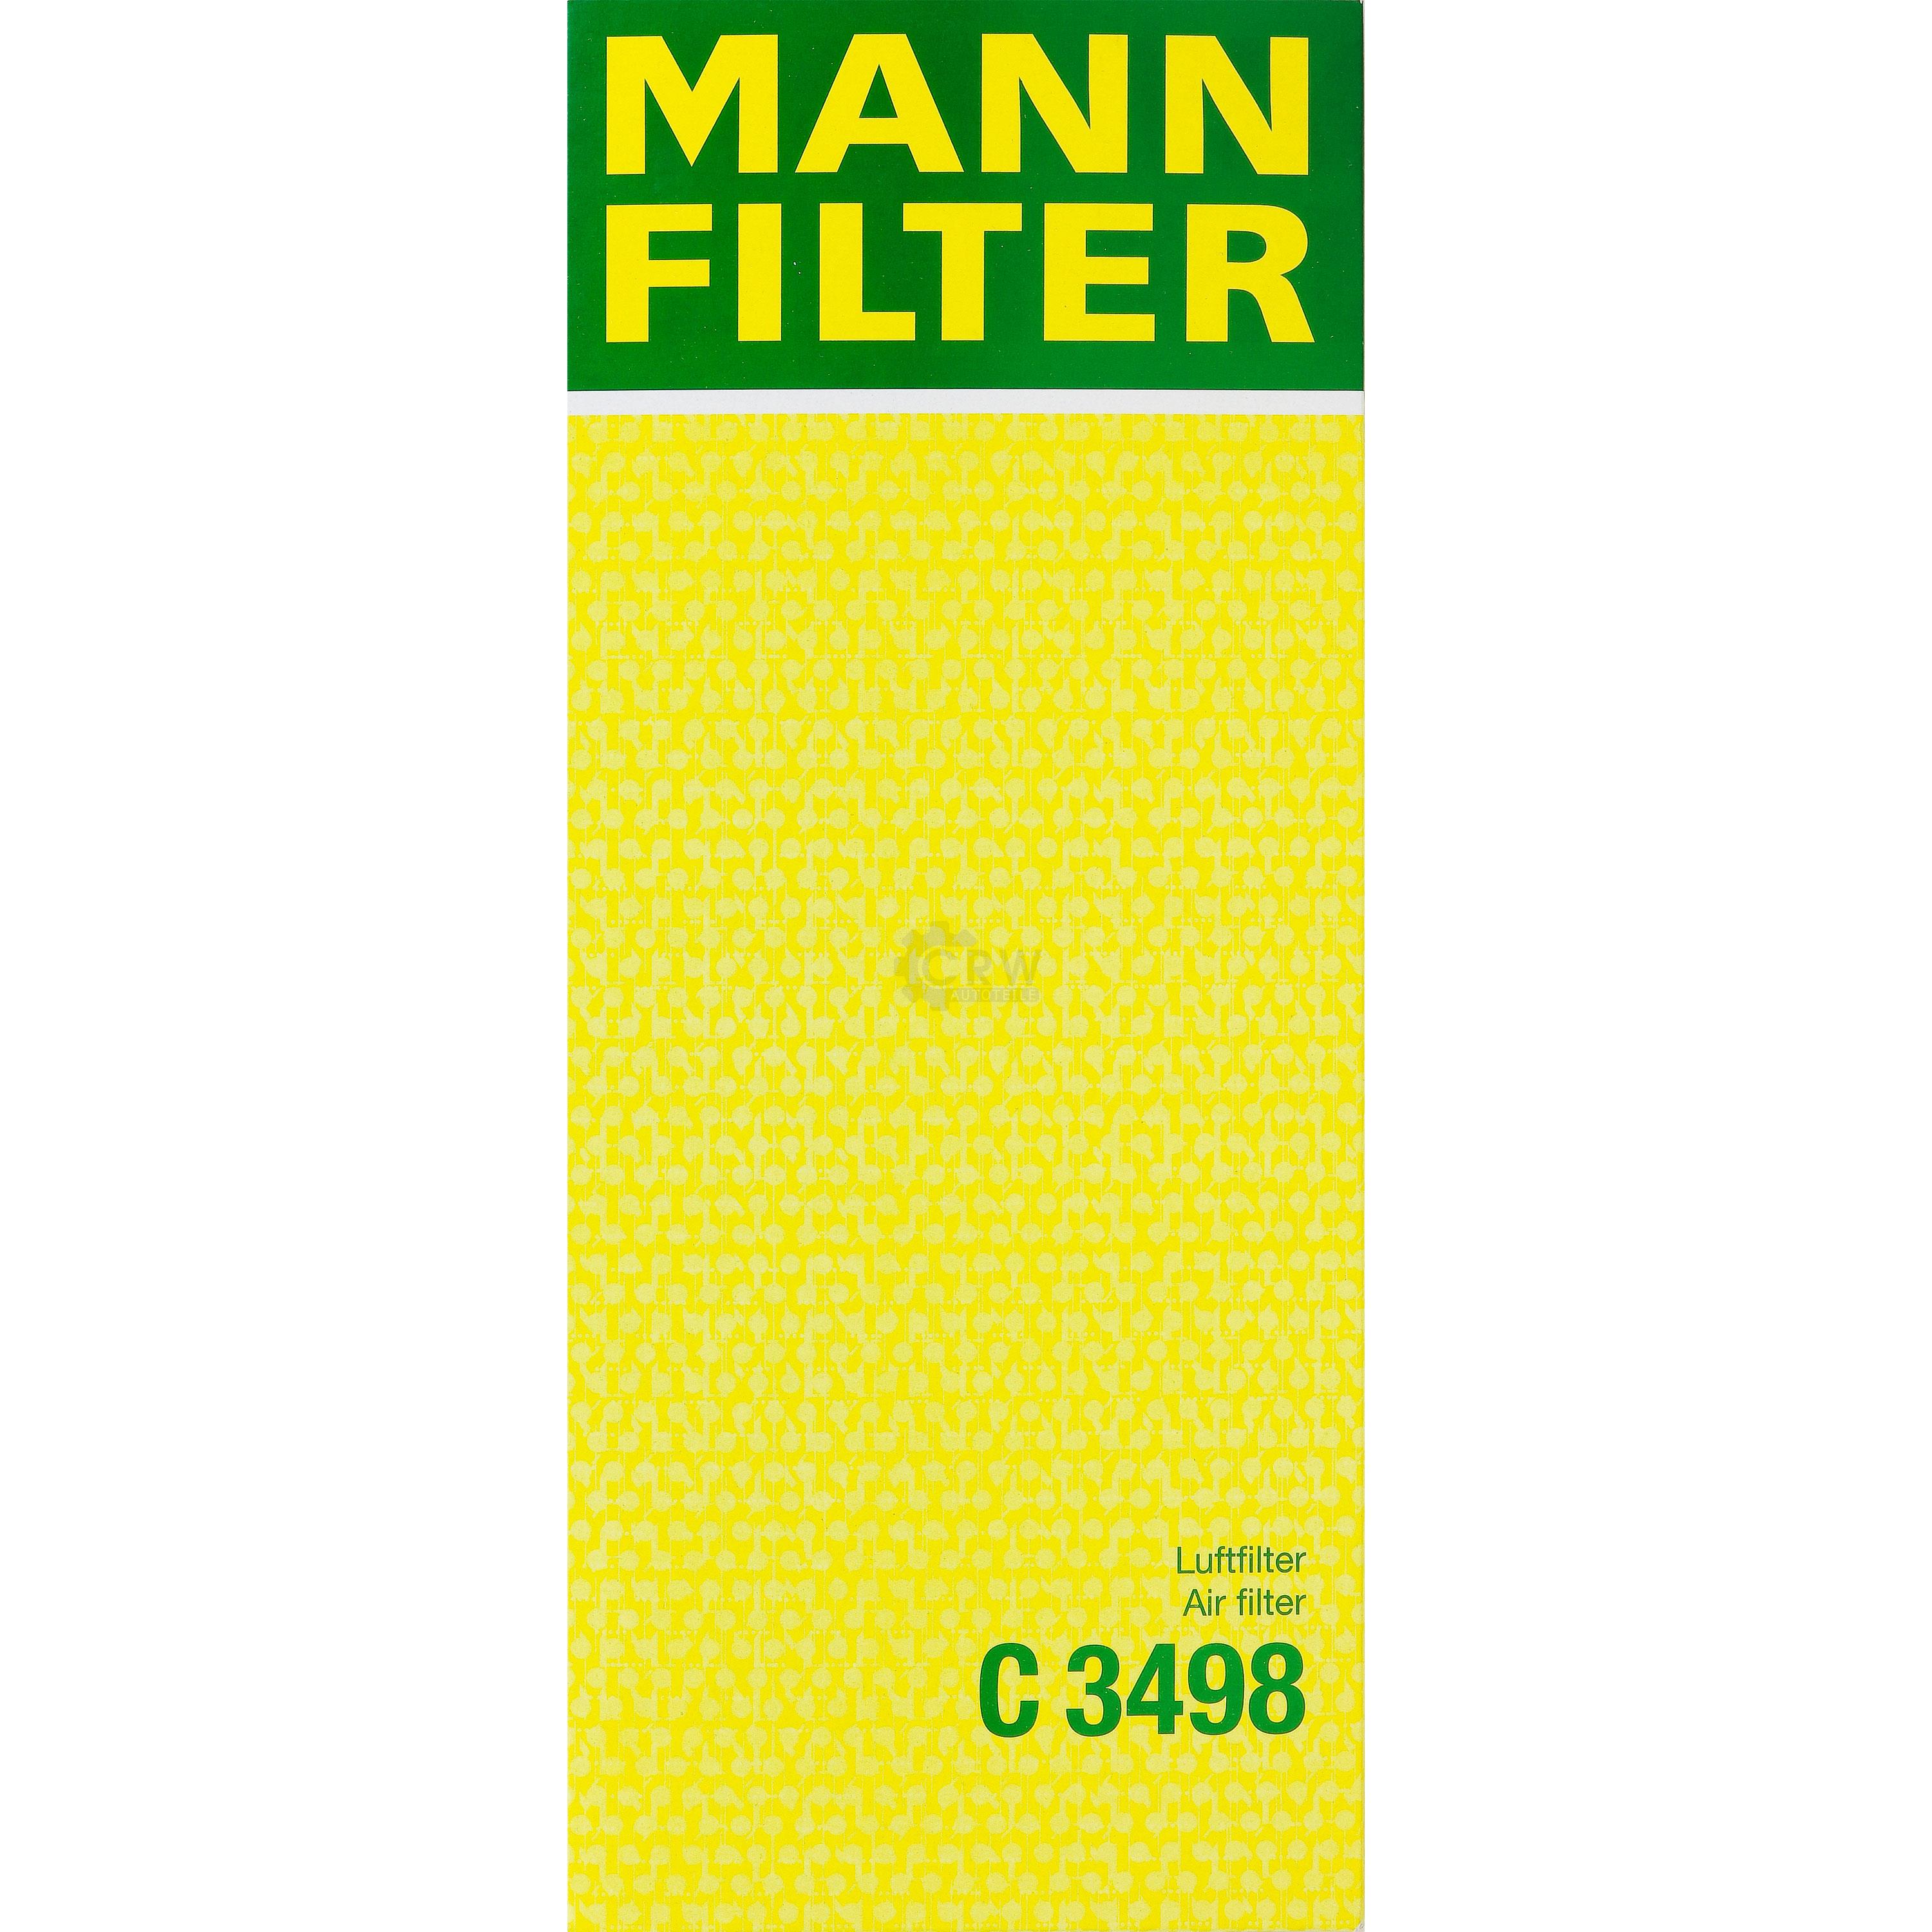 MANN-FILTER Luftfilter für Ford Mondeo III Turnier BWY 2.0 TDCi B5Y 1.8 16V B4Y